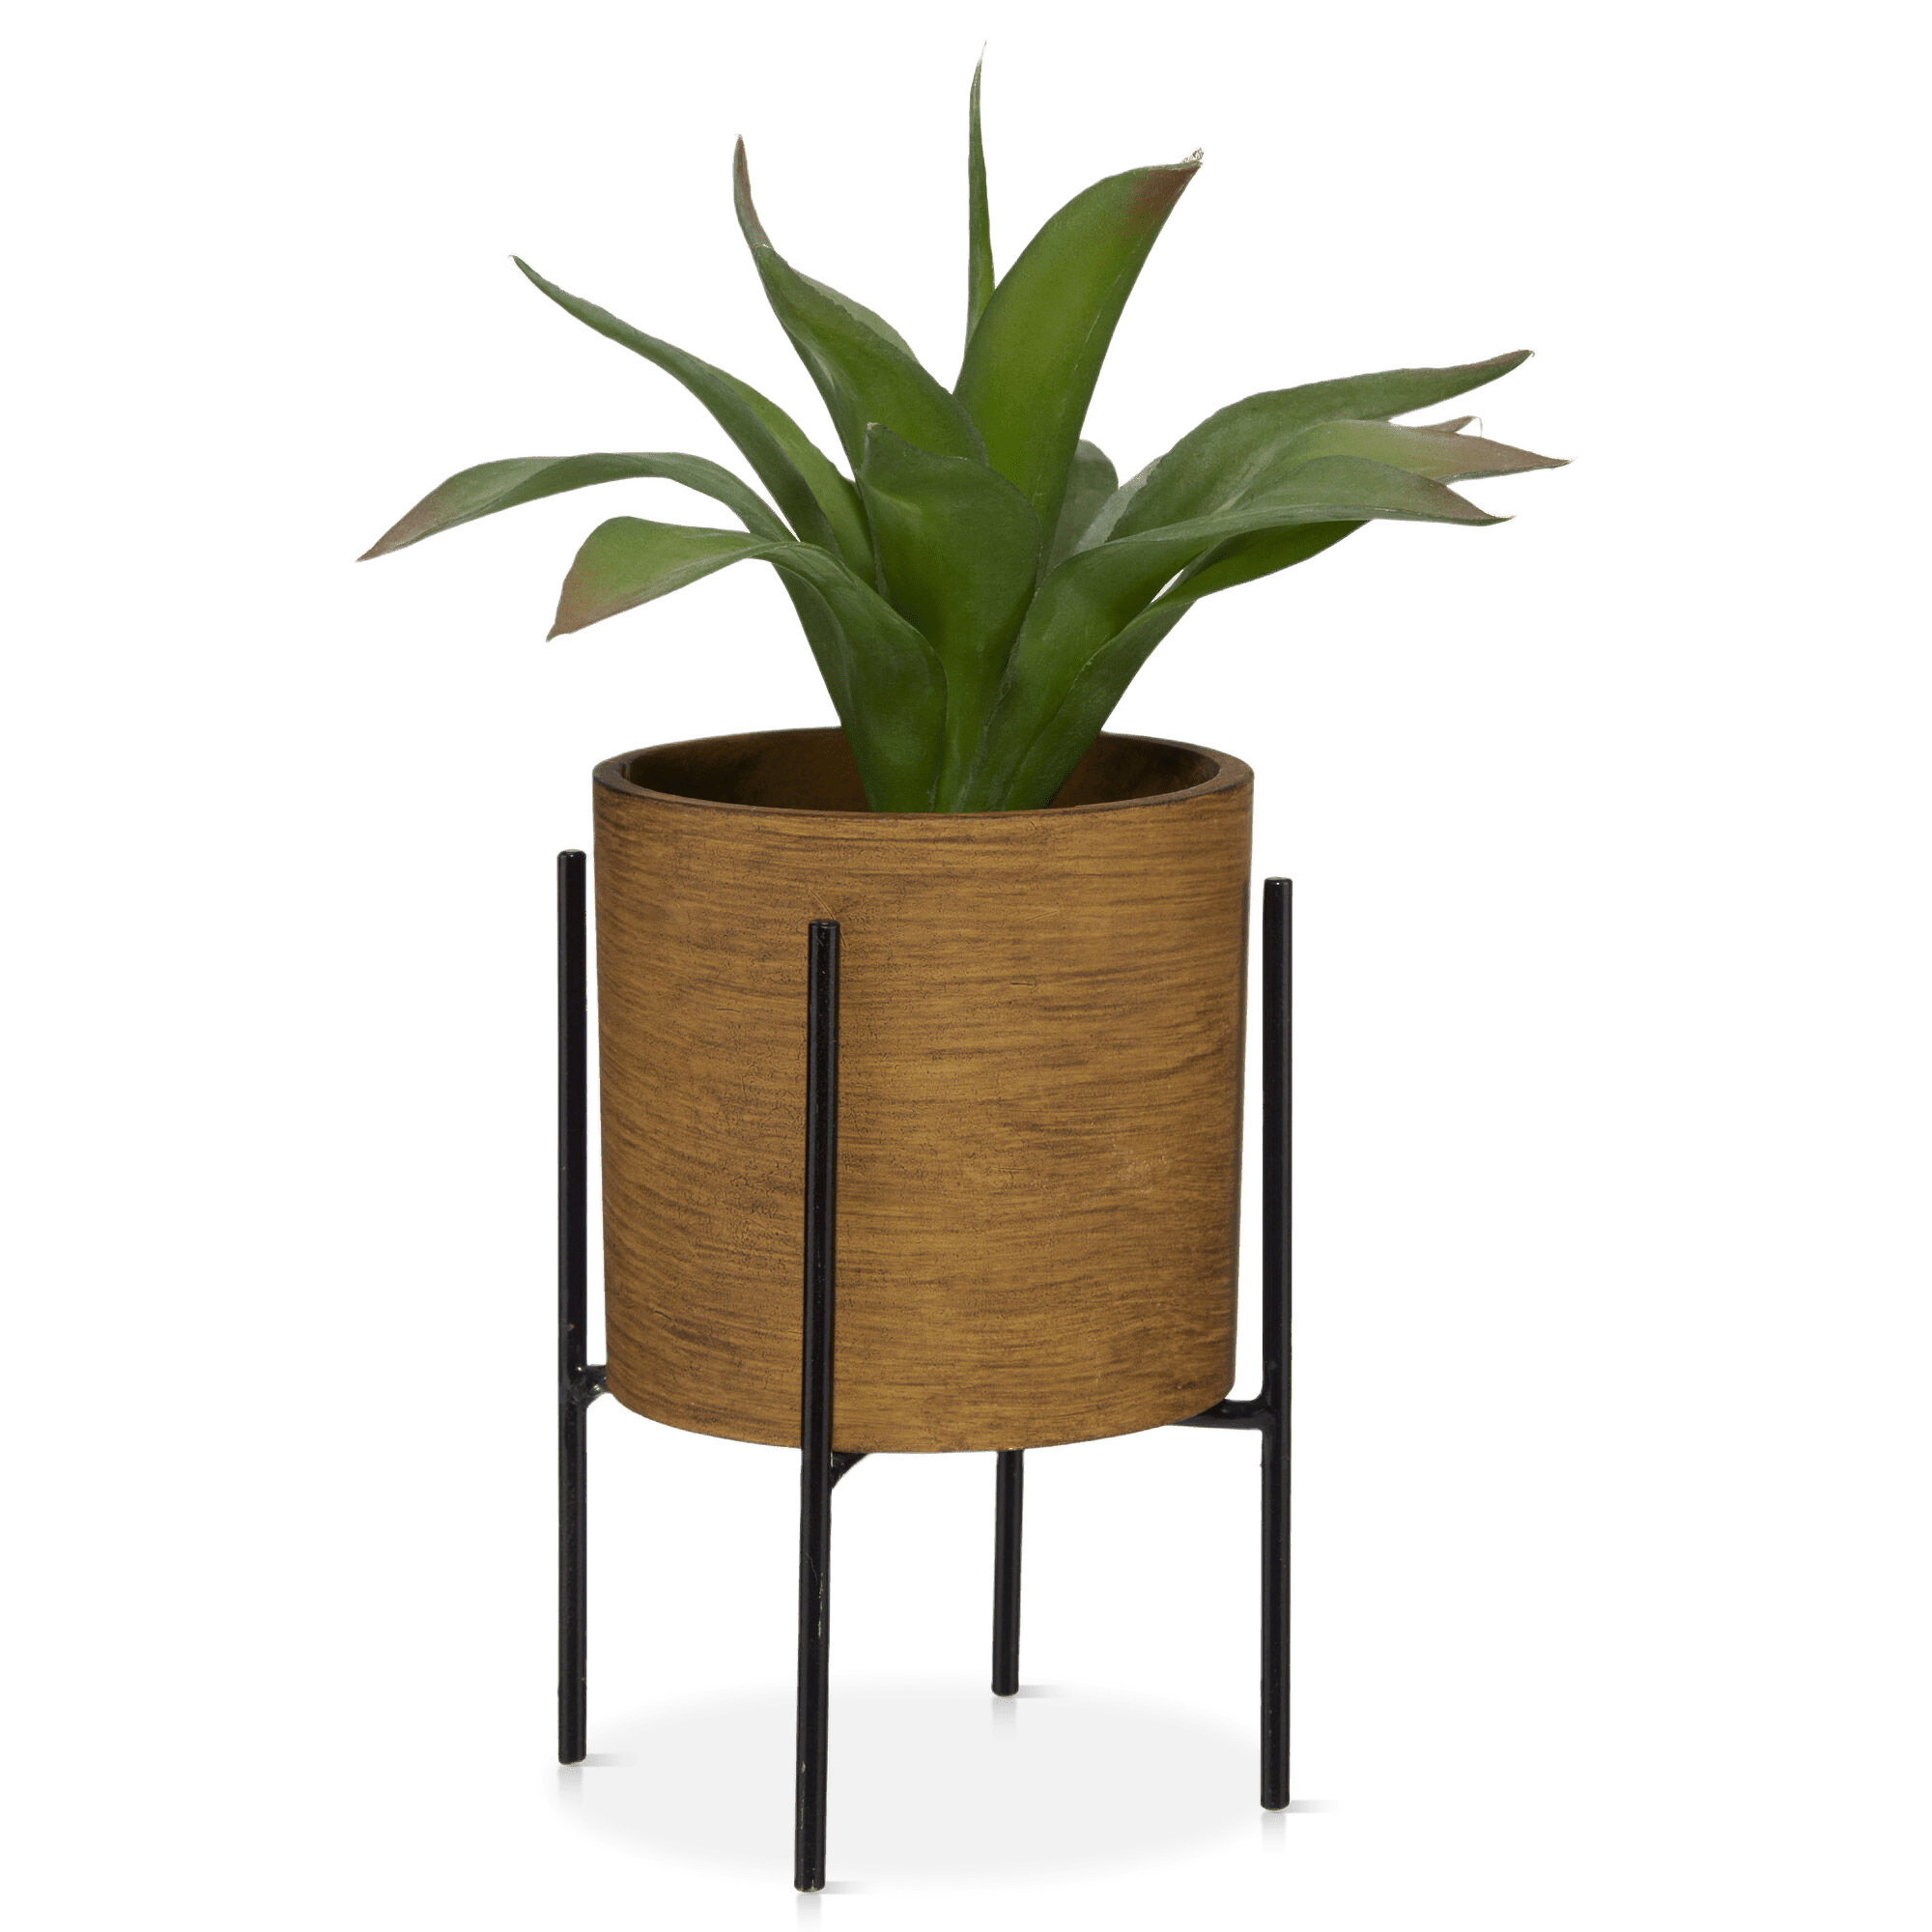 Plante en pot sur support métallique